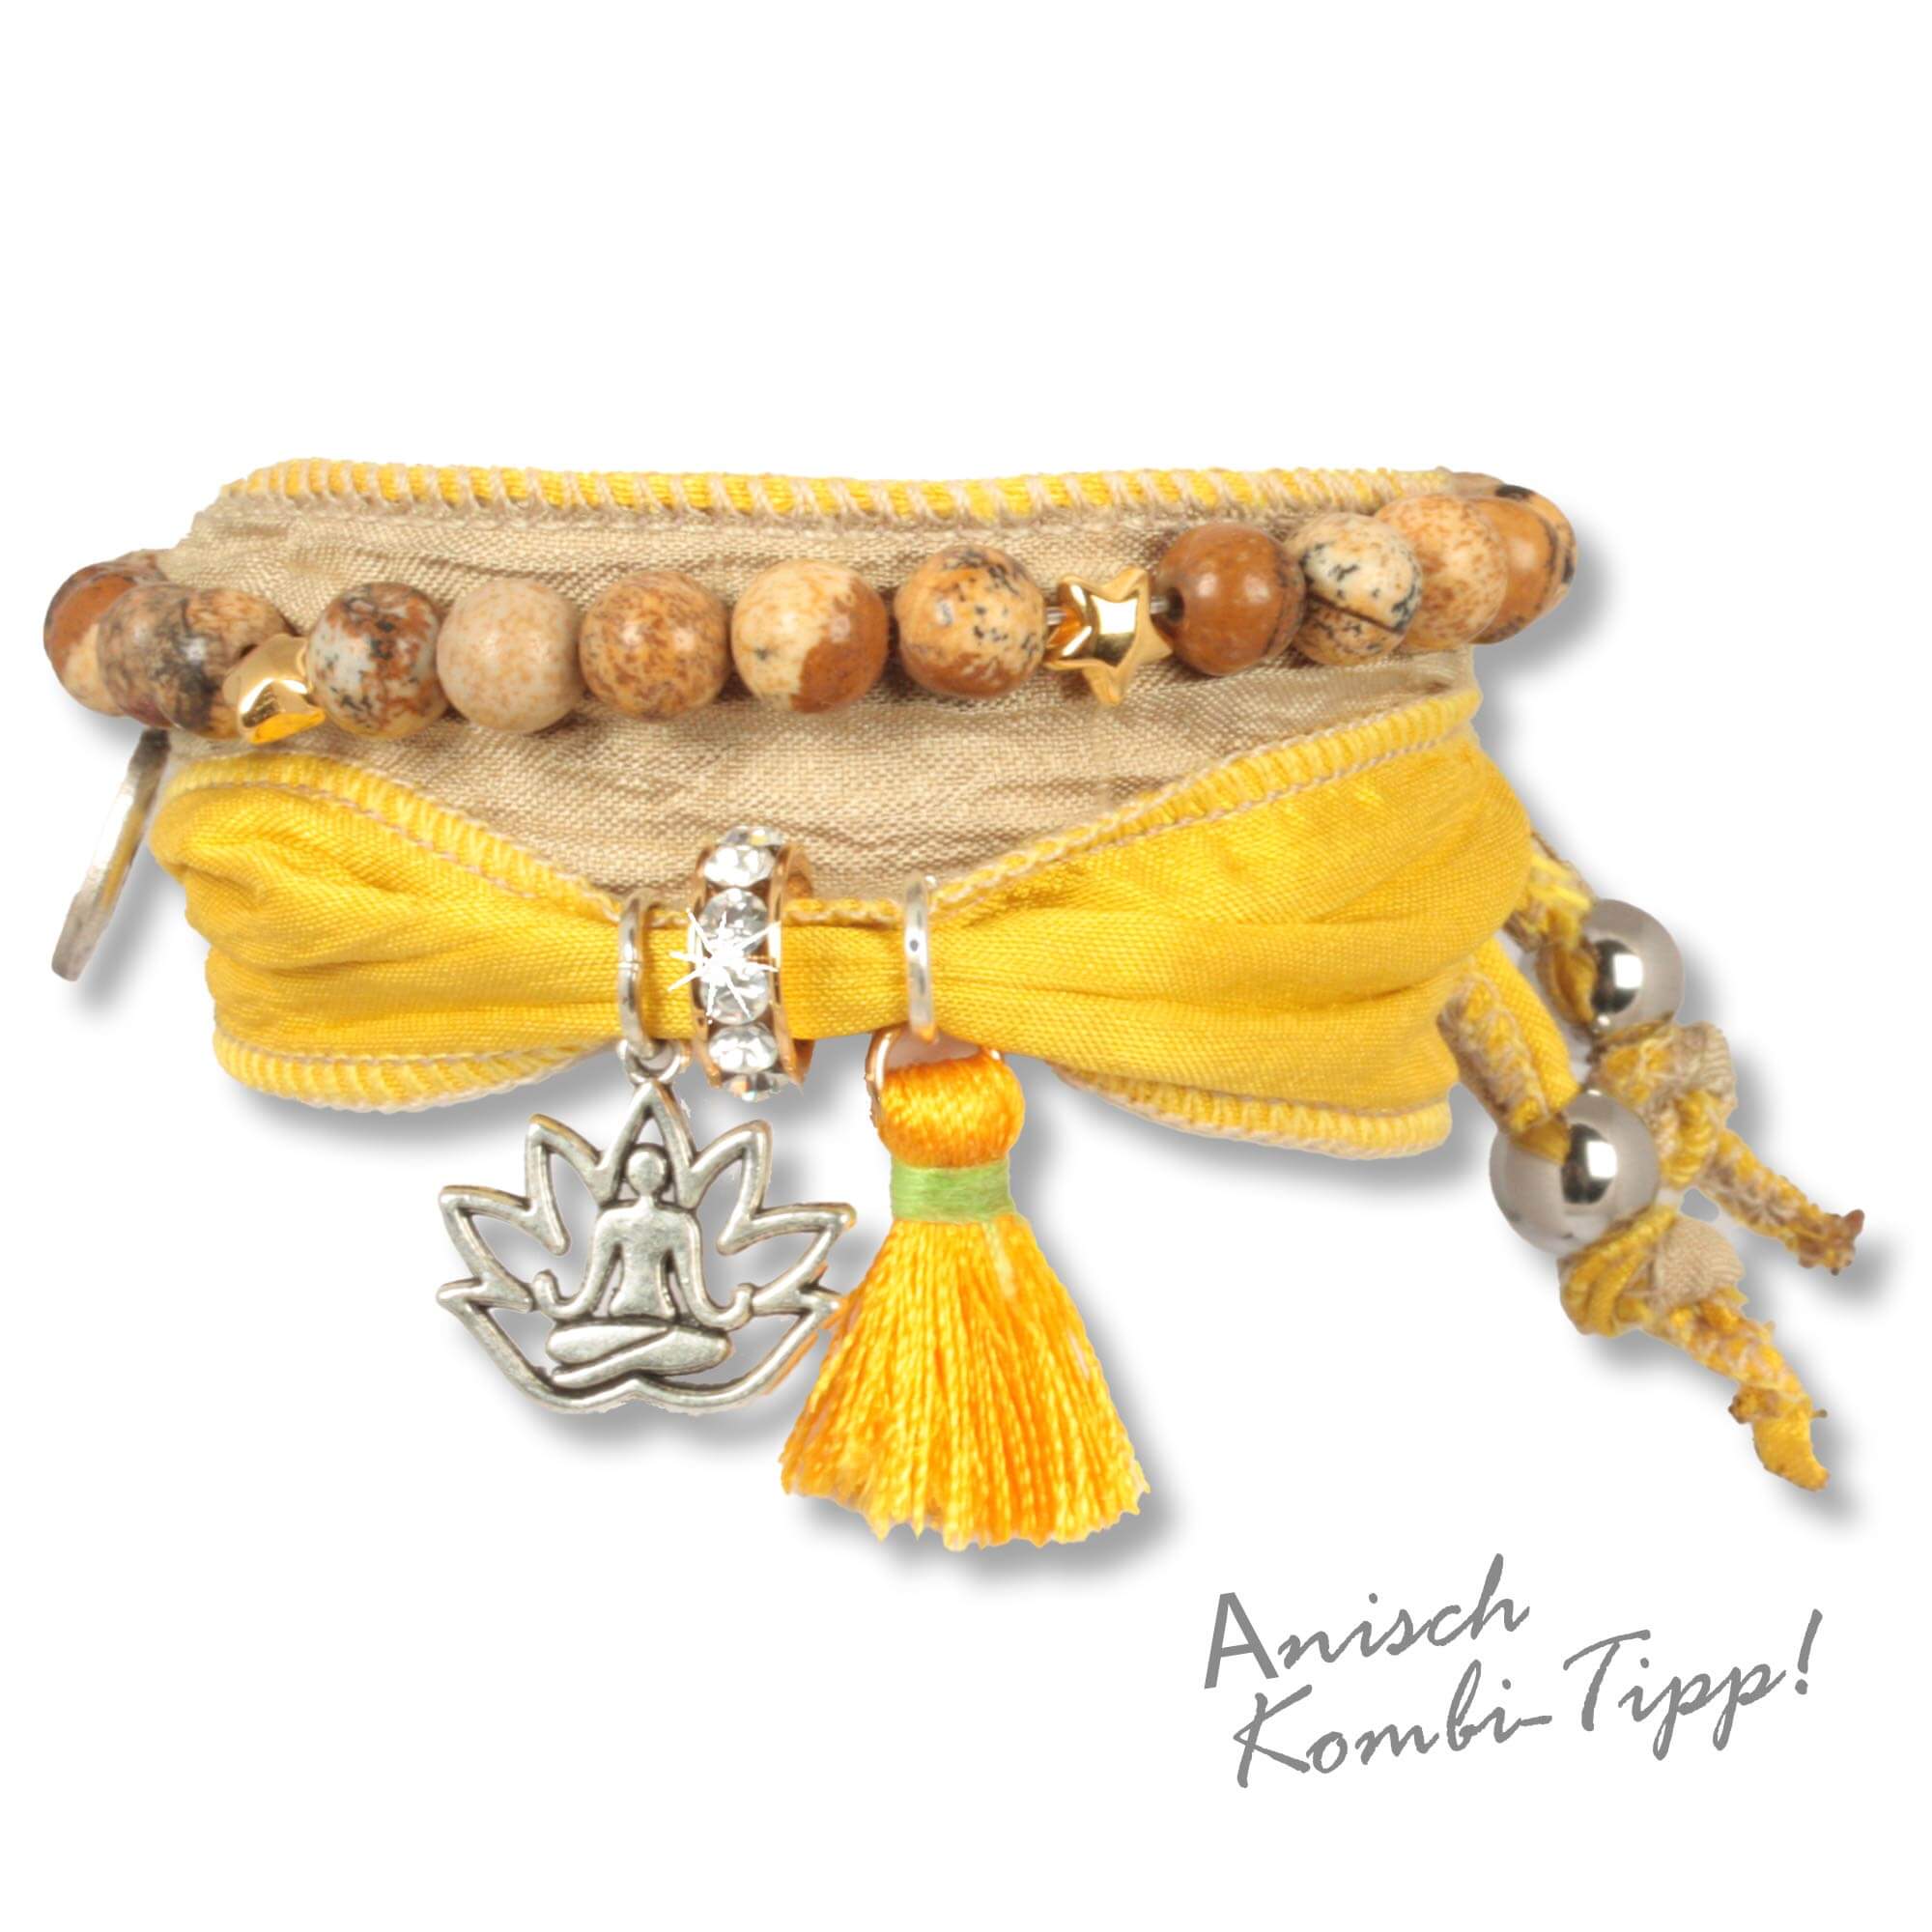 Handgefertigtes Stoffarmband aus Saris und Seidenstoffen in Gelb, Naturfarben und Gold. Verziert mit einer metallenen Lotusblume, die einen meditierenden Buddha zeigt, einer gelben Seidenquaste, einem Rondell besetzt mit tschechischen Kristallen. Herstell